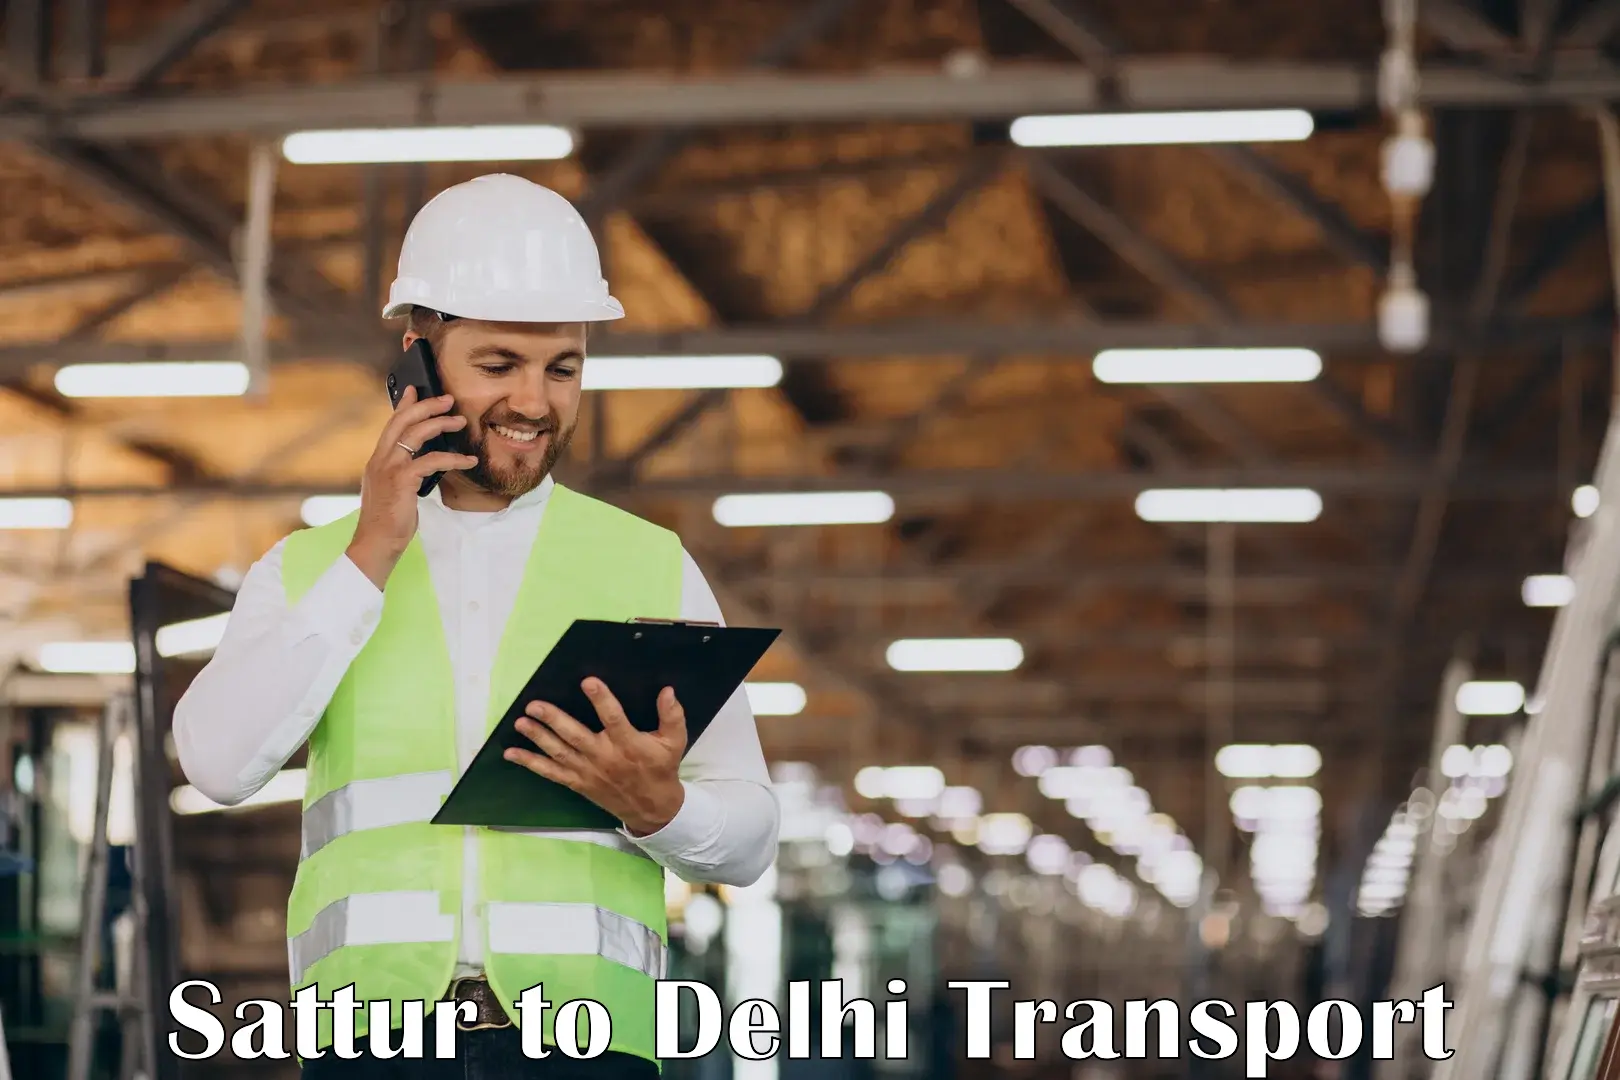 Delivery service Sattur to Delhi